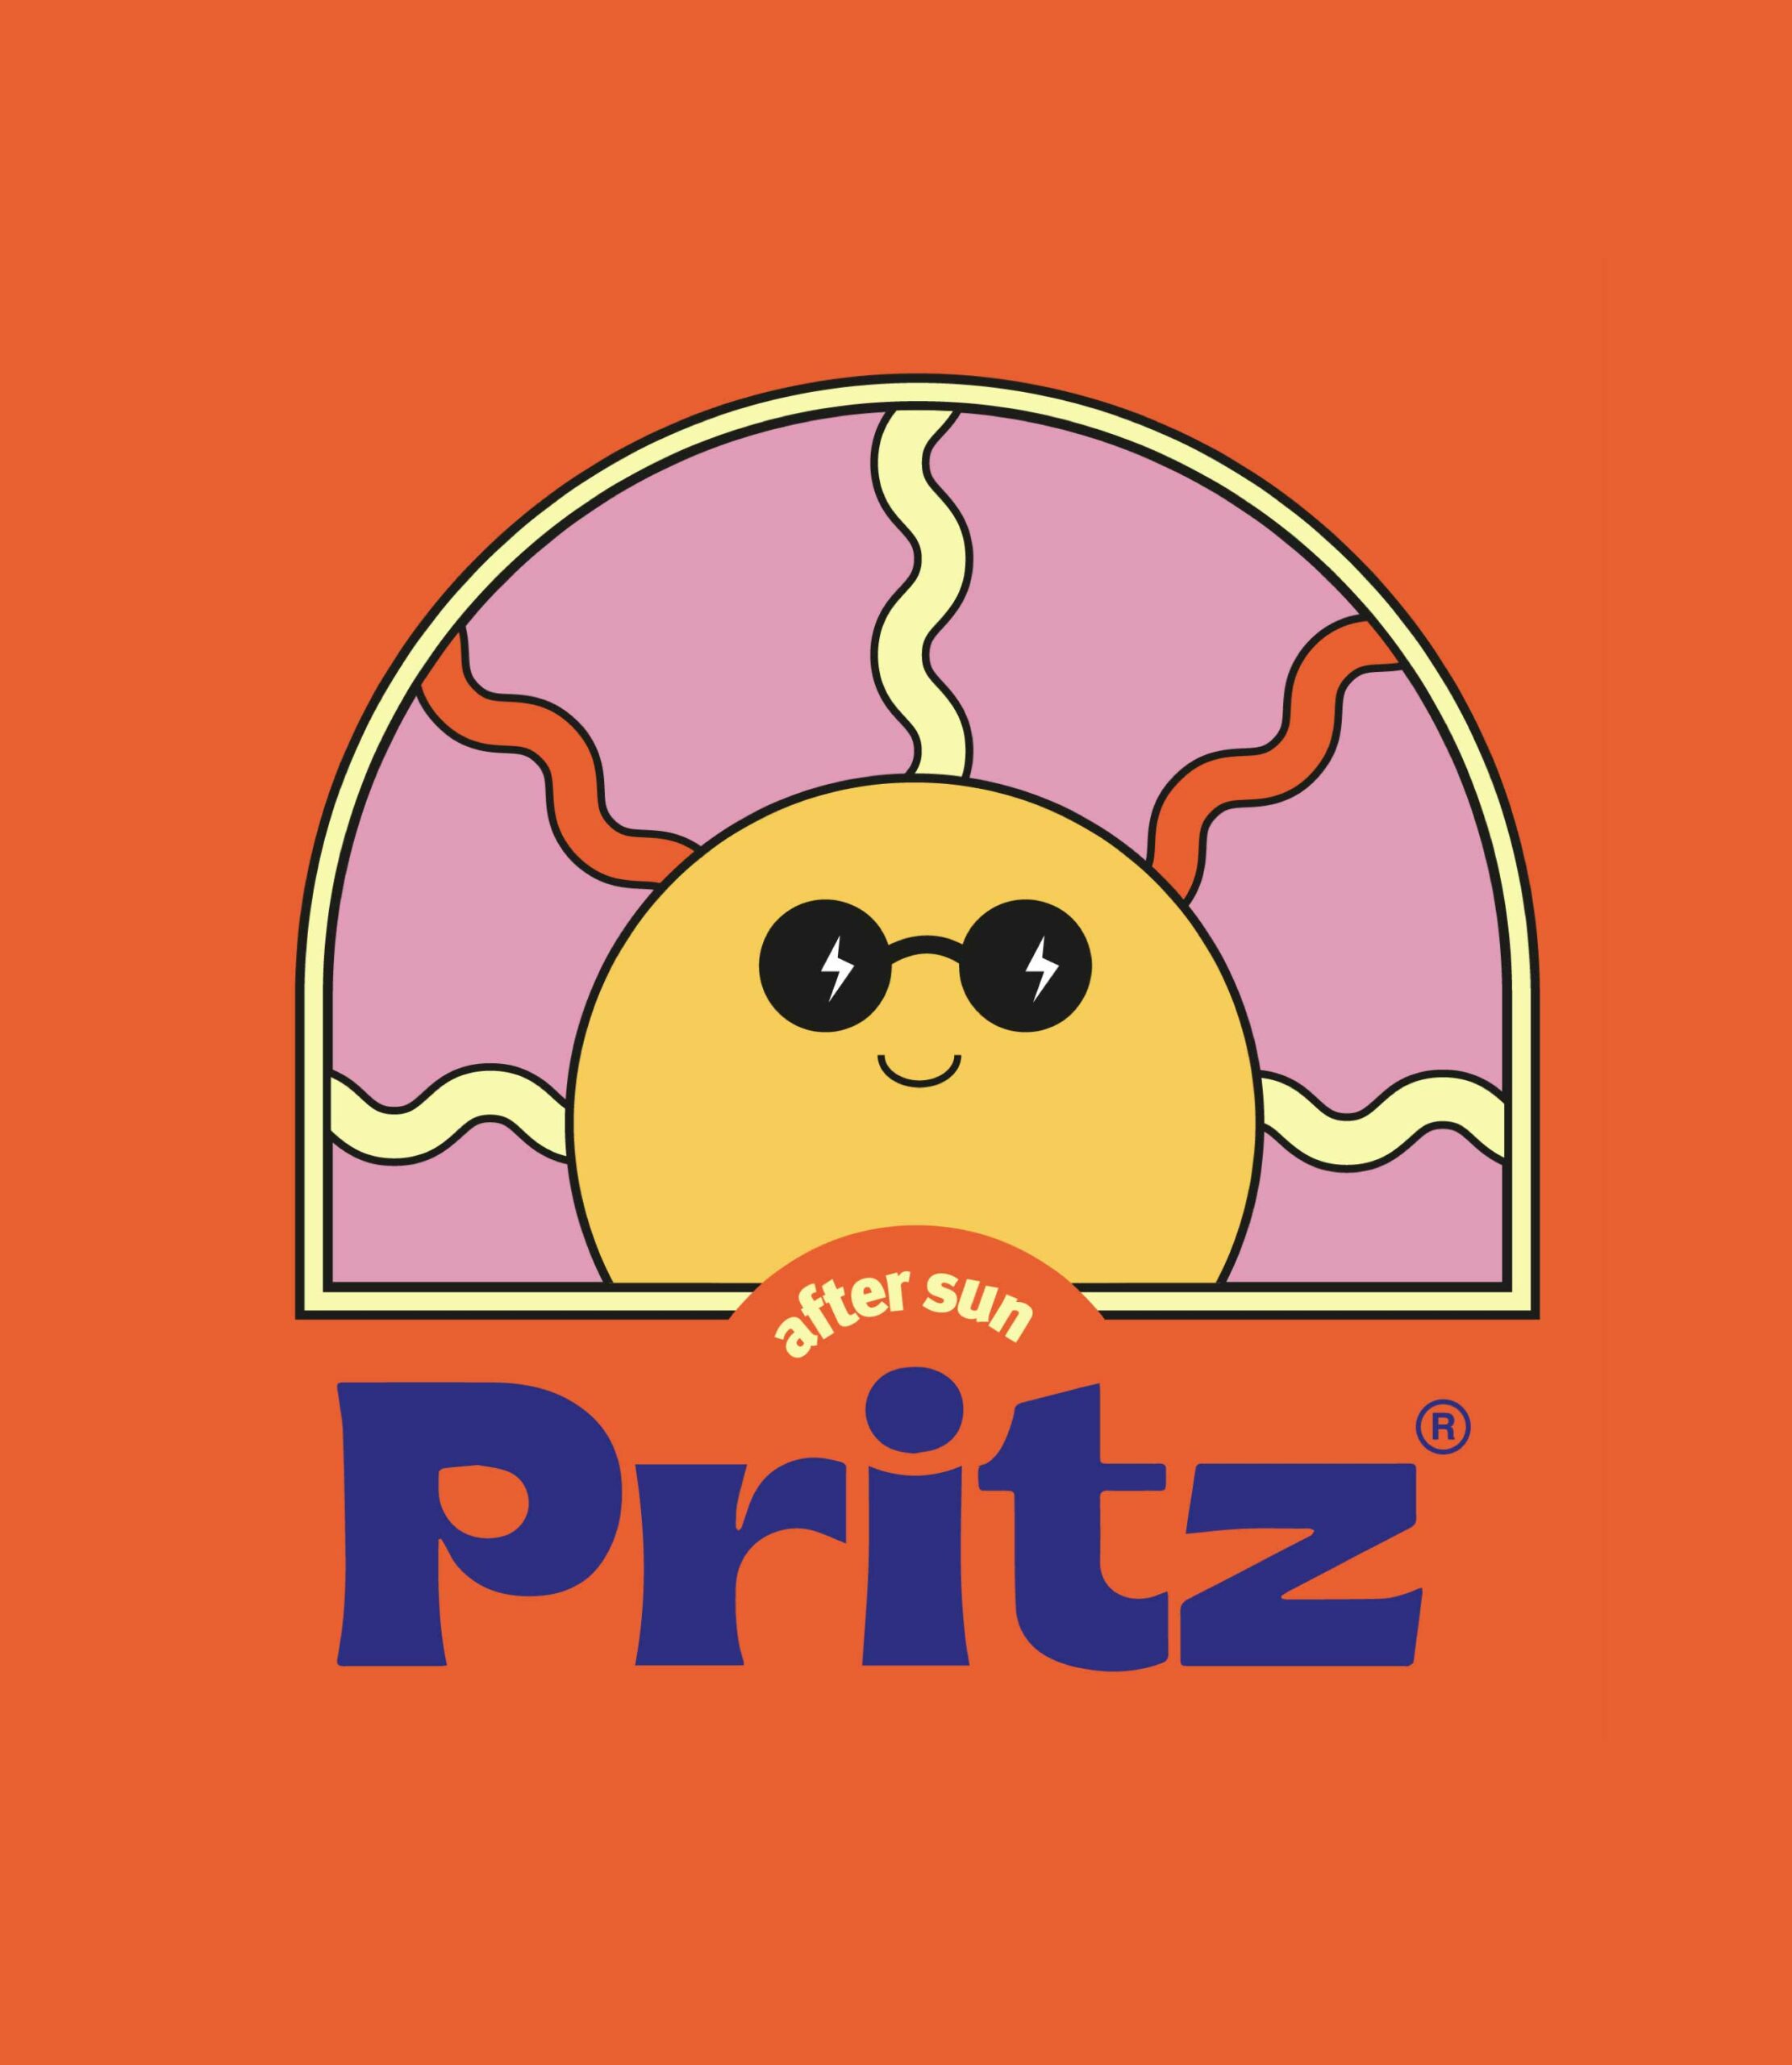 Pritz_07